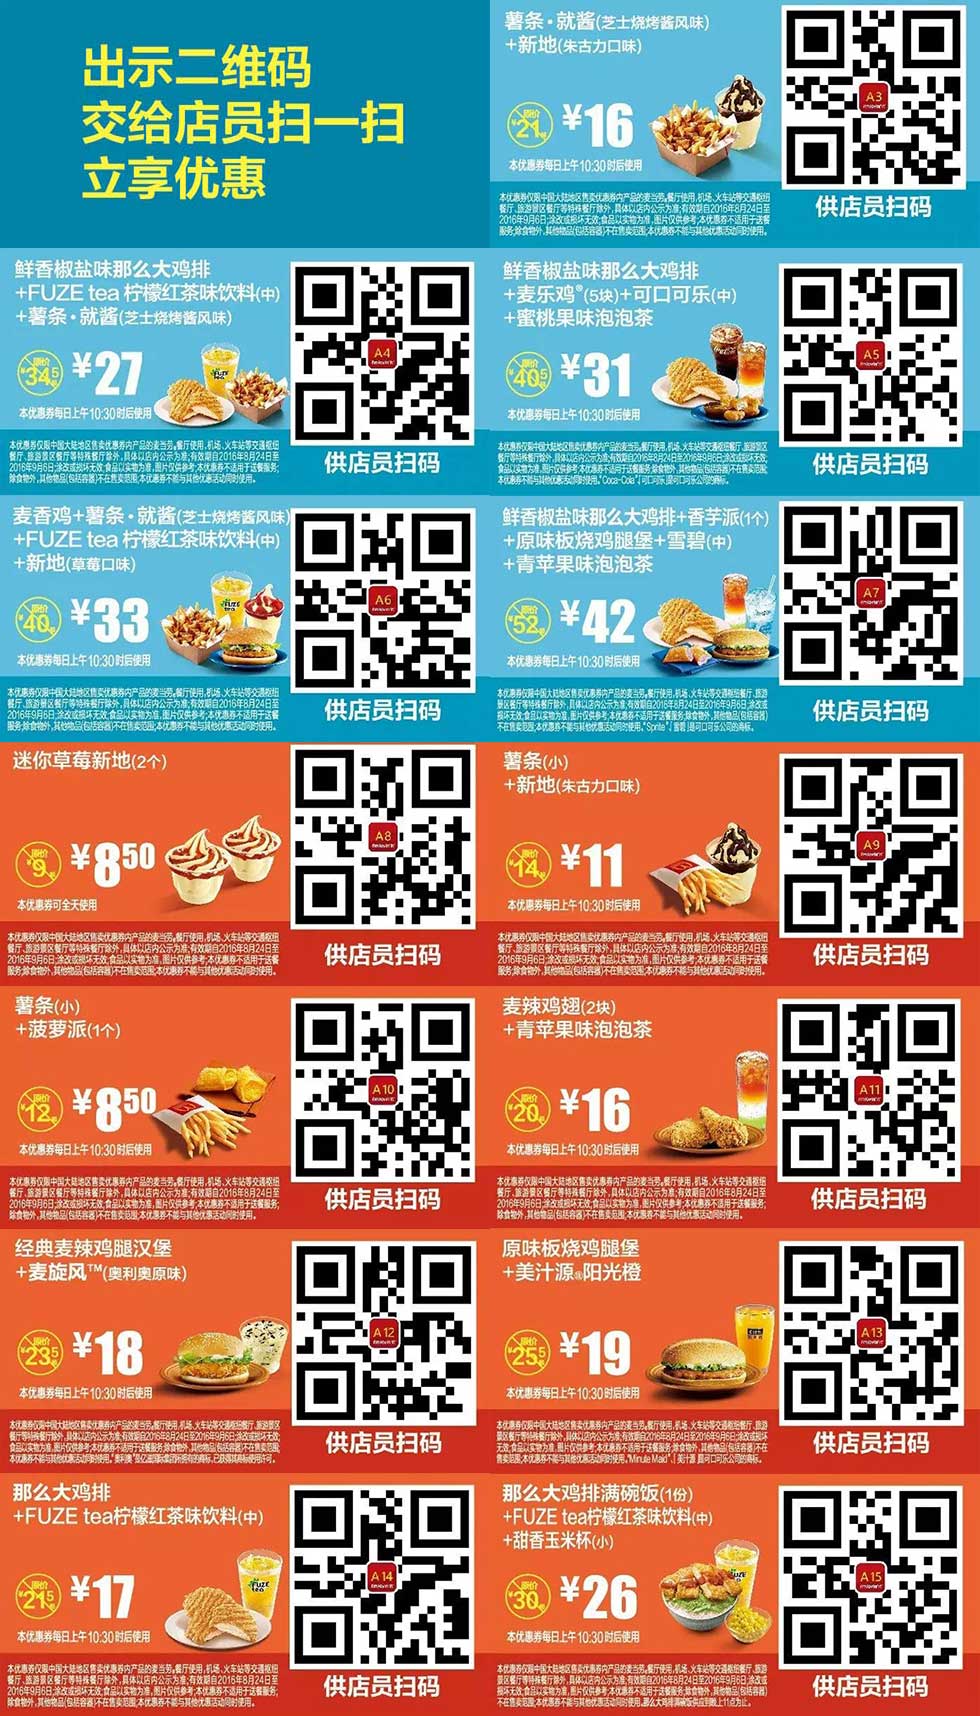 麦当劳2016年8月份9月份优惠券整张手机版，手机出示有优惠 有效期至：2016年9月6日 www.5ikfc.com